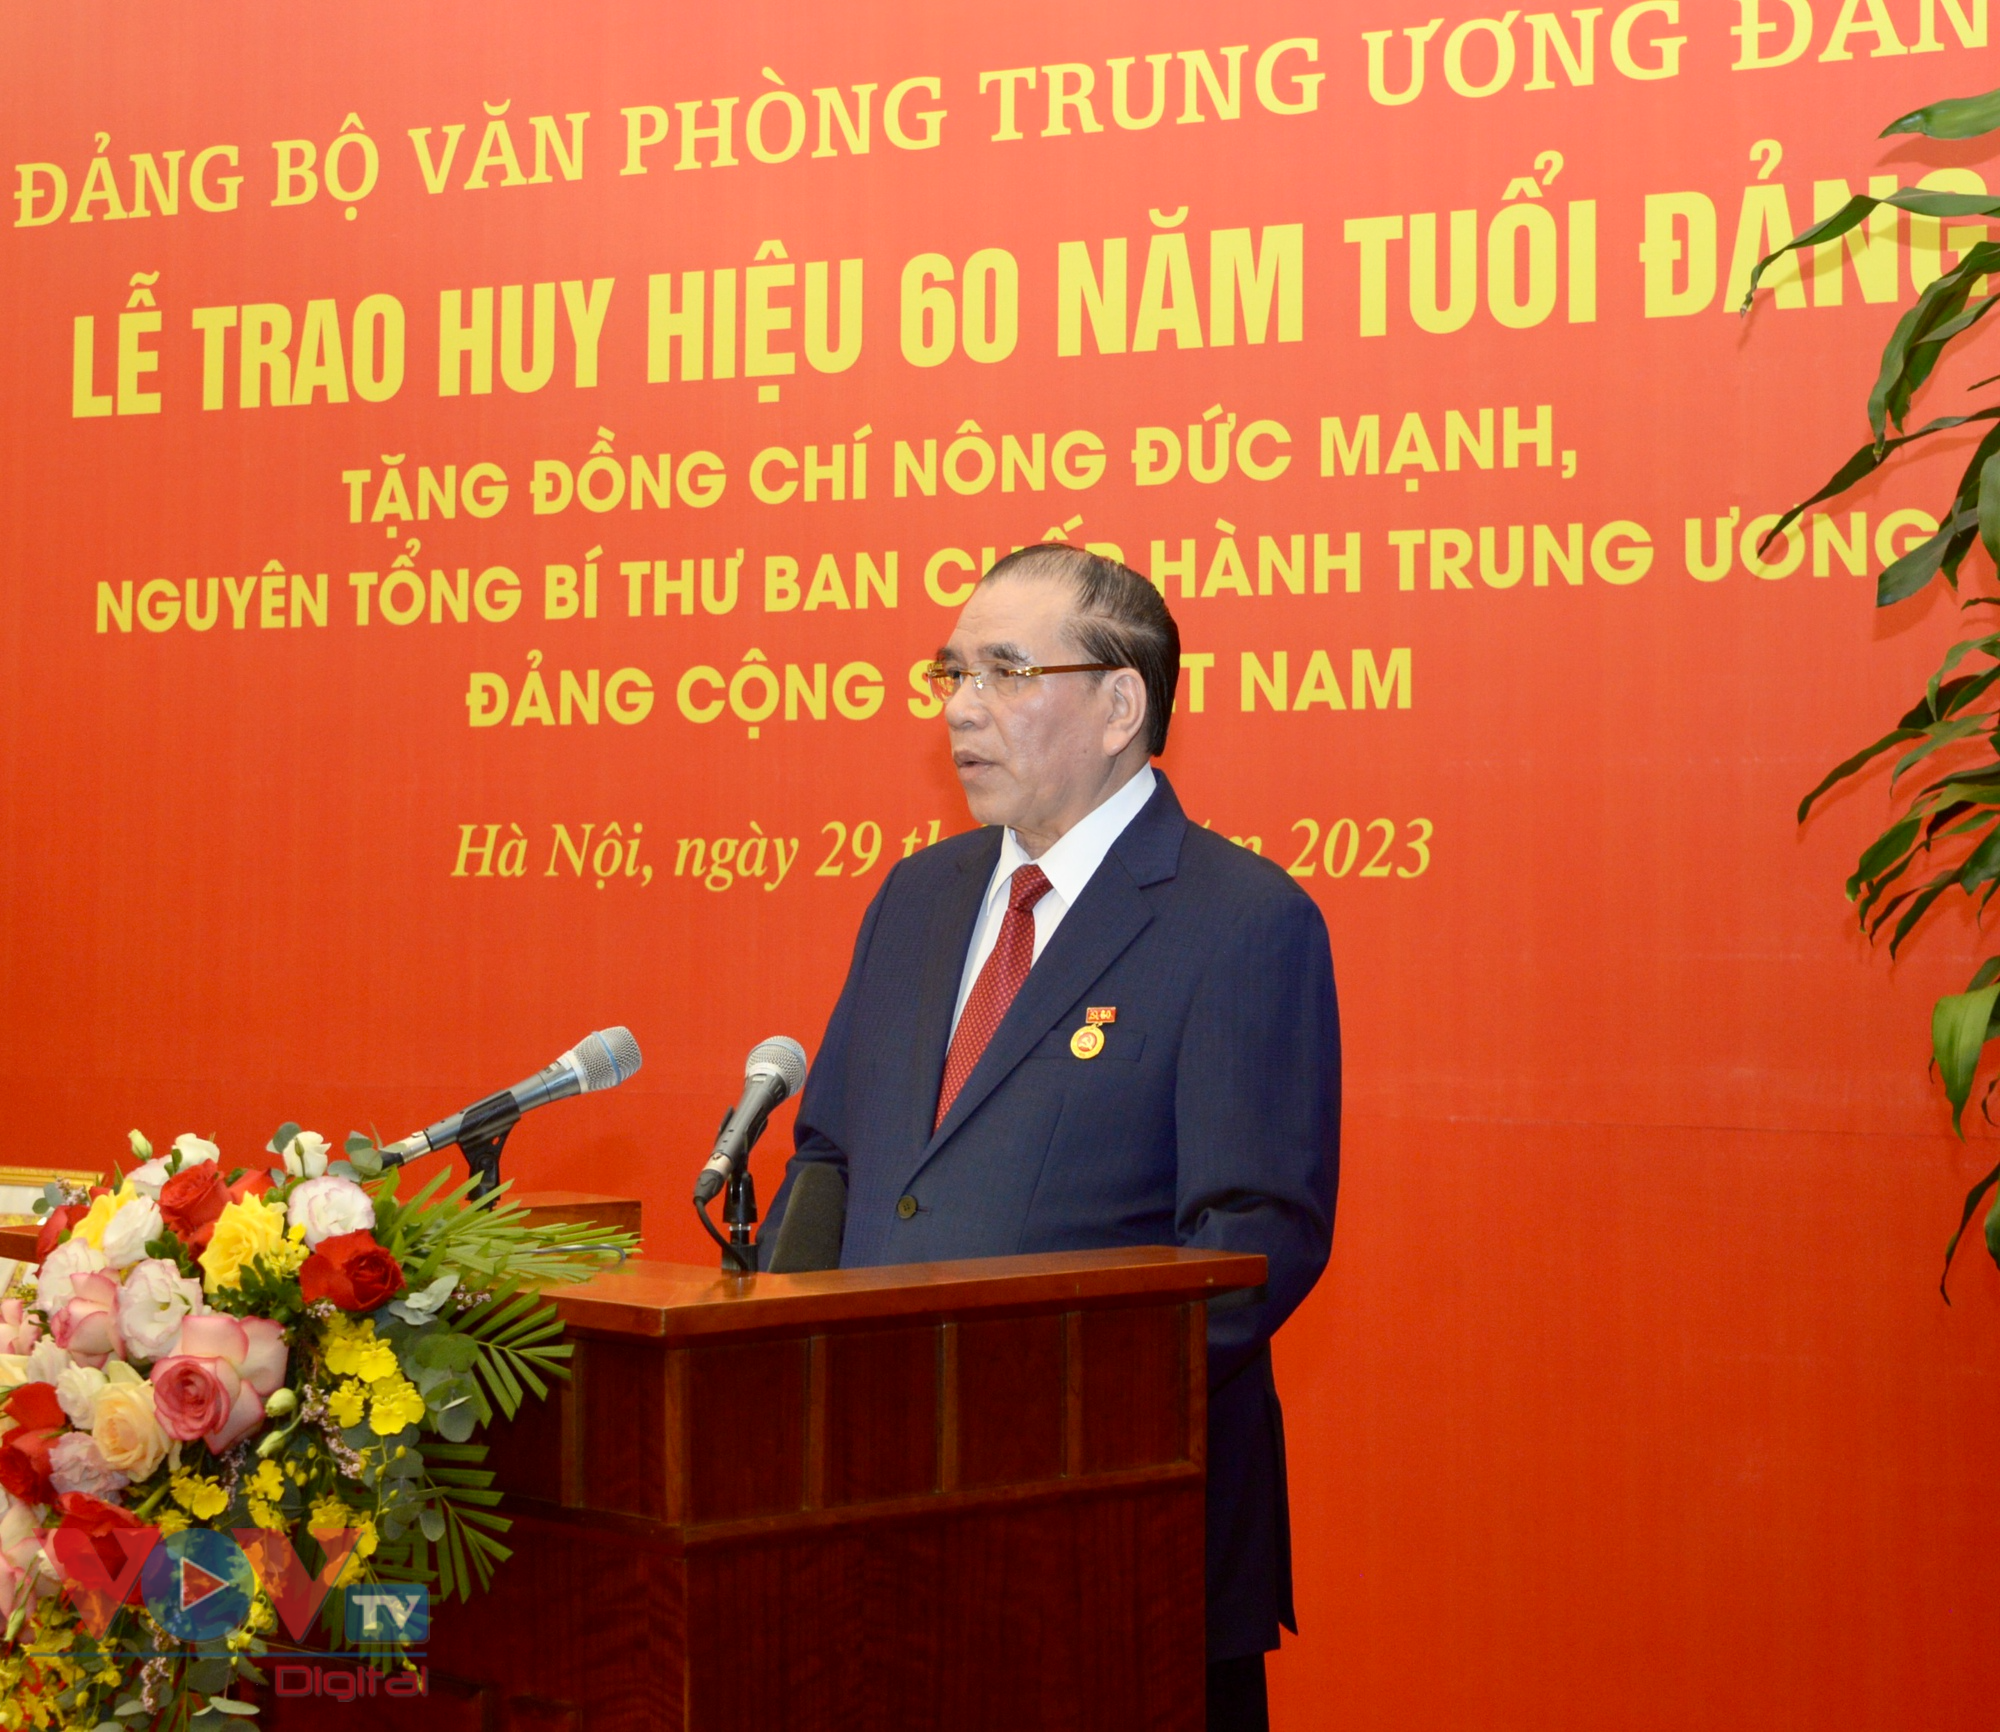 Tổng Bí thư Nguyễn Phú Trọng trao huy hiệu 60 năm tuổi Đảng tặng Nguyên Tổng Bí thư Nông Đức Mạnh - Ảnh 4.